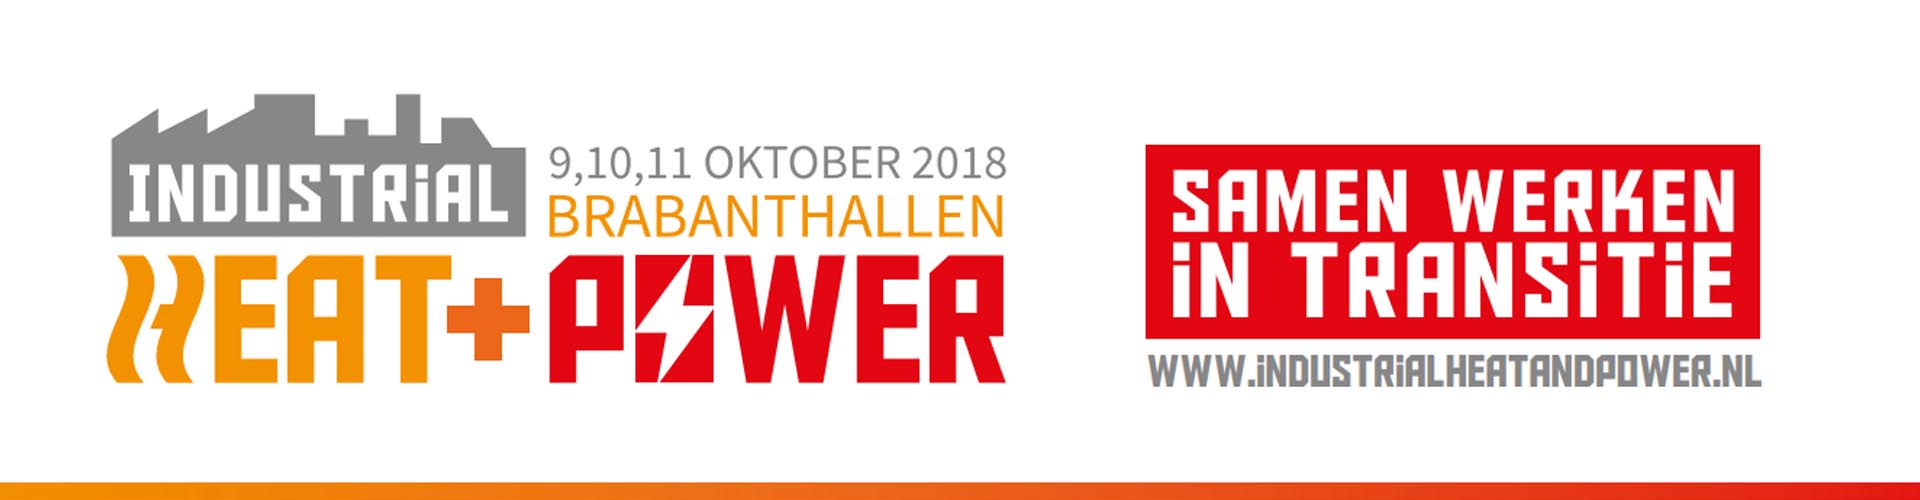 Elco Burners Industrial Heat & Power beurs (Den Bosch - 9,10,11 oktober)